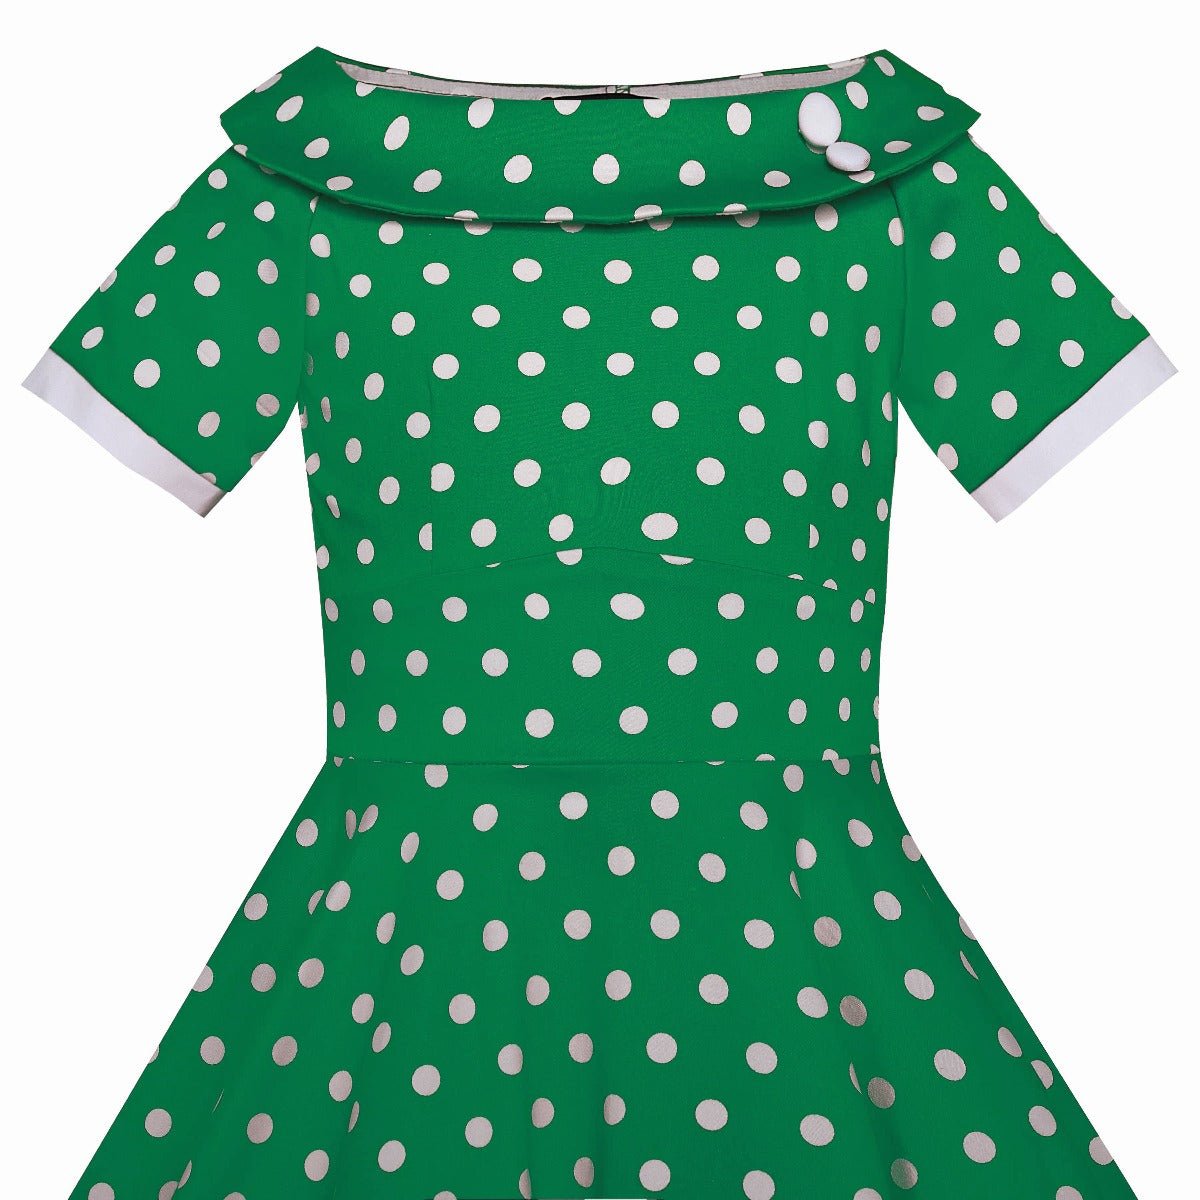 Top view of dark green polka dot print Darlene dress